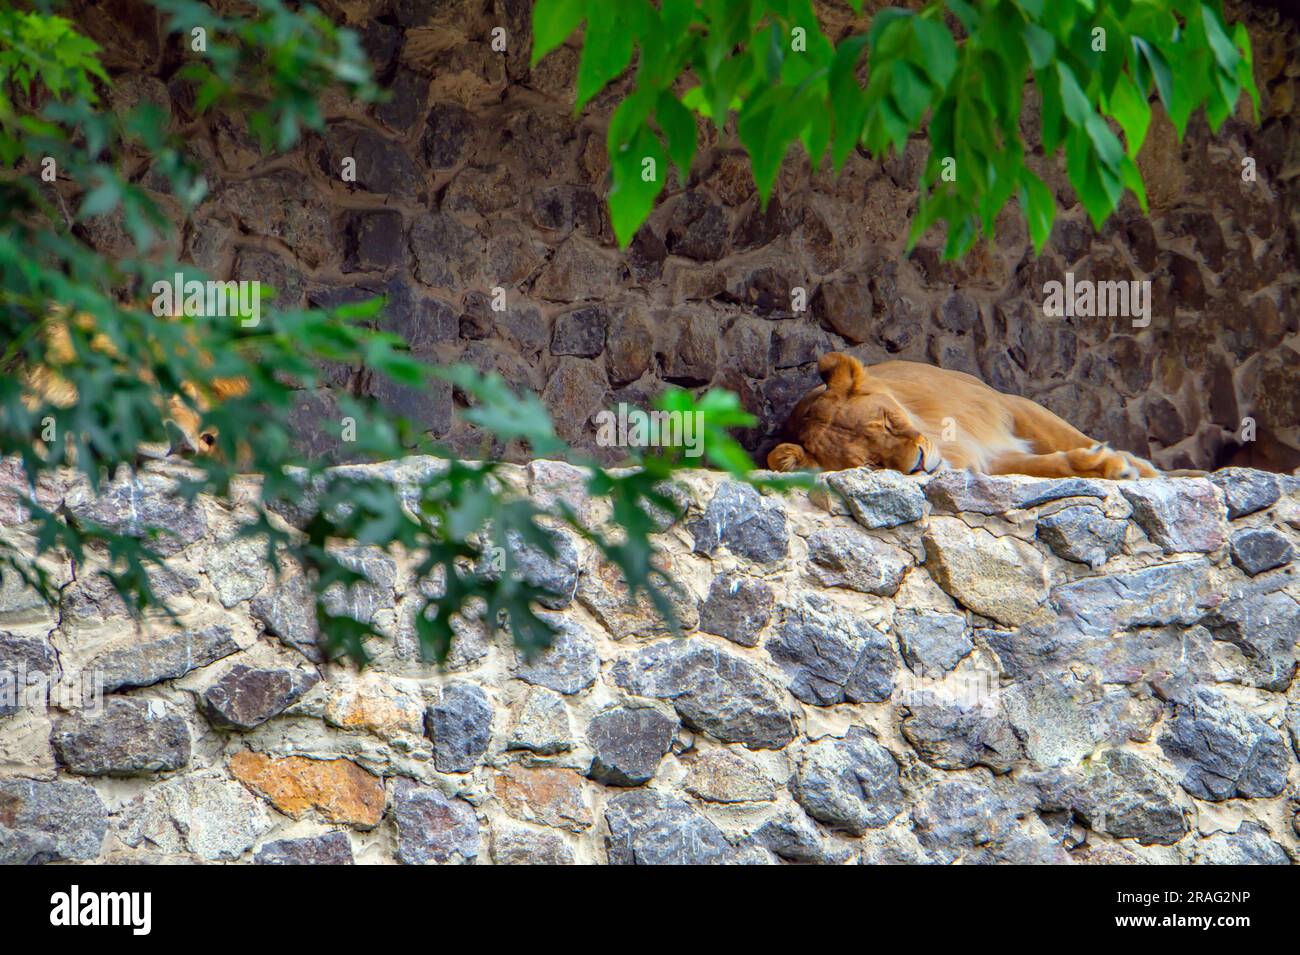 Le Lion dort paisiblement sur quelques rochers. Le lion dort sur les rochers contre un mur de briques. Un lion mâle dormant paisiblement après le petit déjeuner. Un grand Banque D'Images